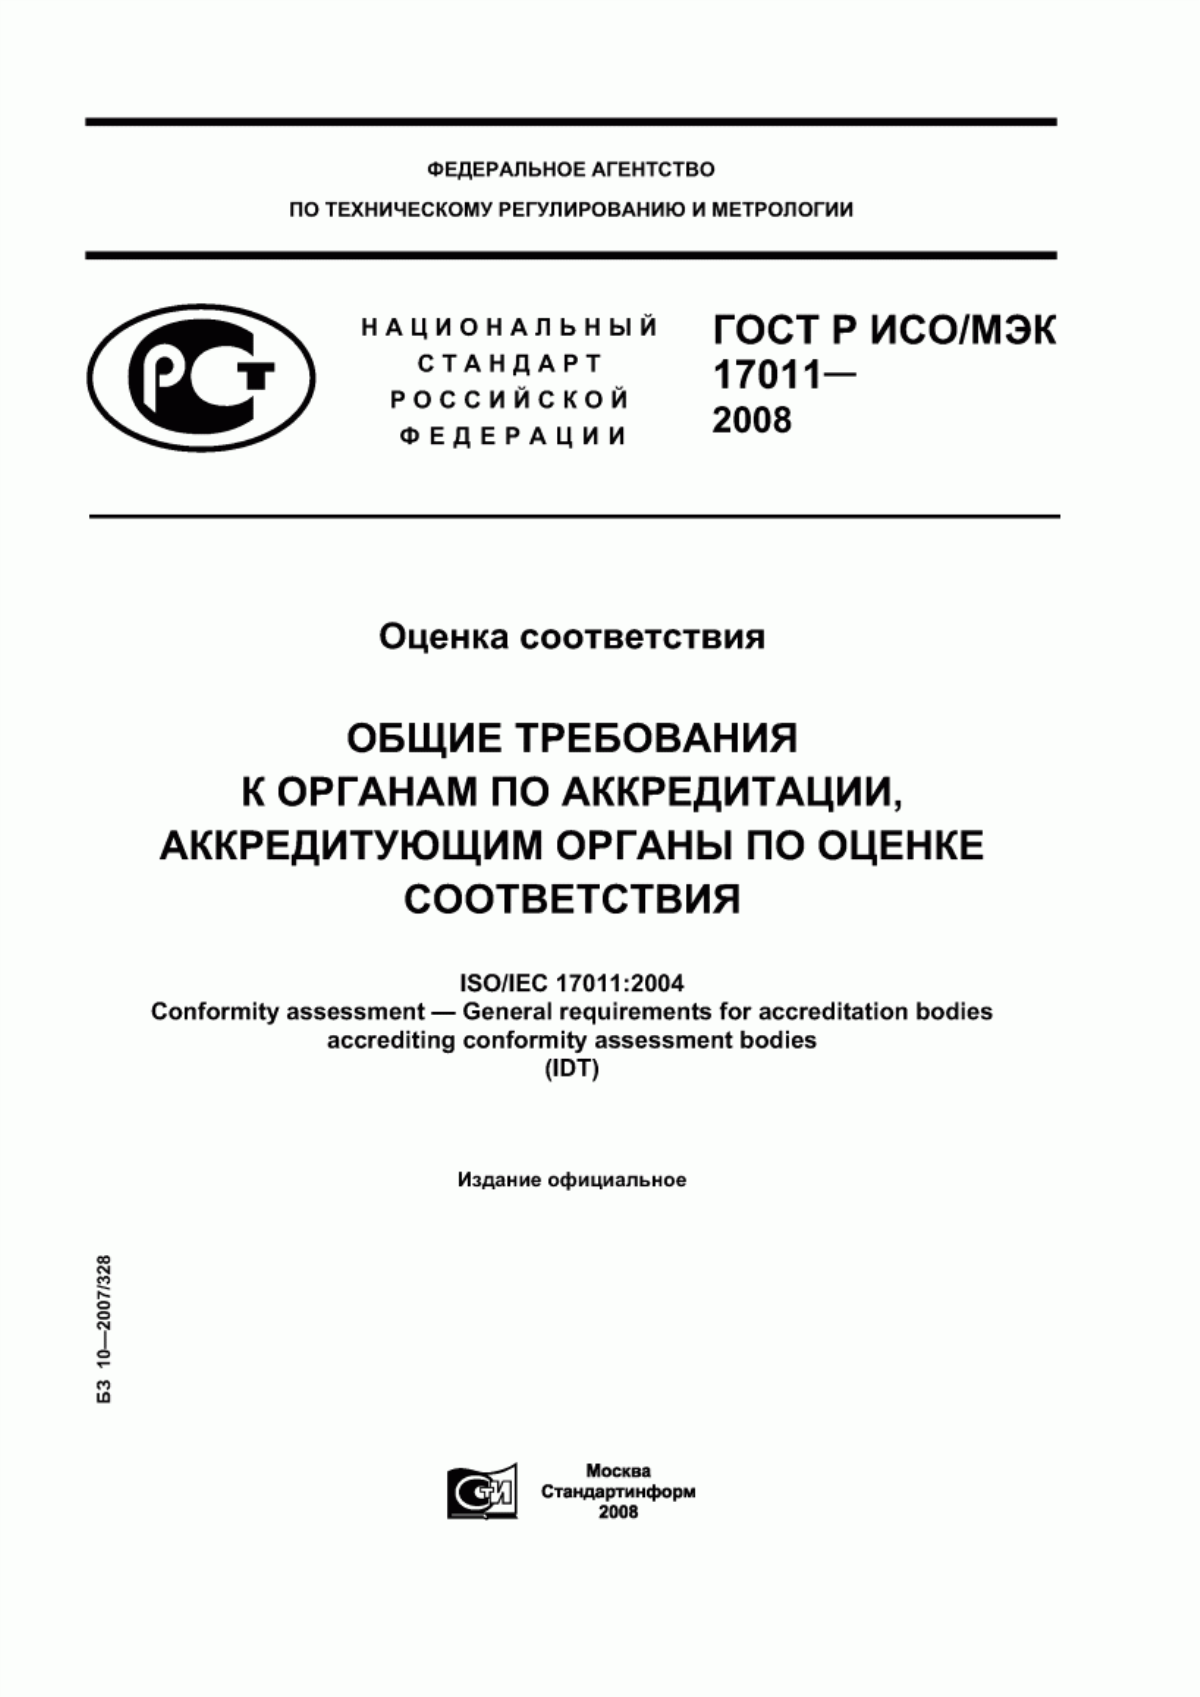 ГОСТ Р ИСО/МЭК 17011-2008 Оценка соответствия. Общие требования к органам по аккредитации, аккредитующим органы по оценке соответствия